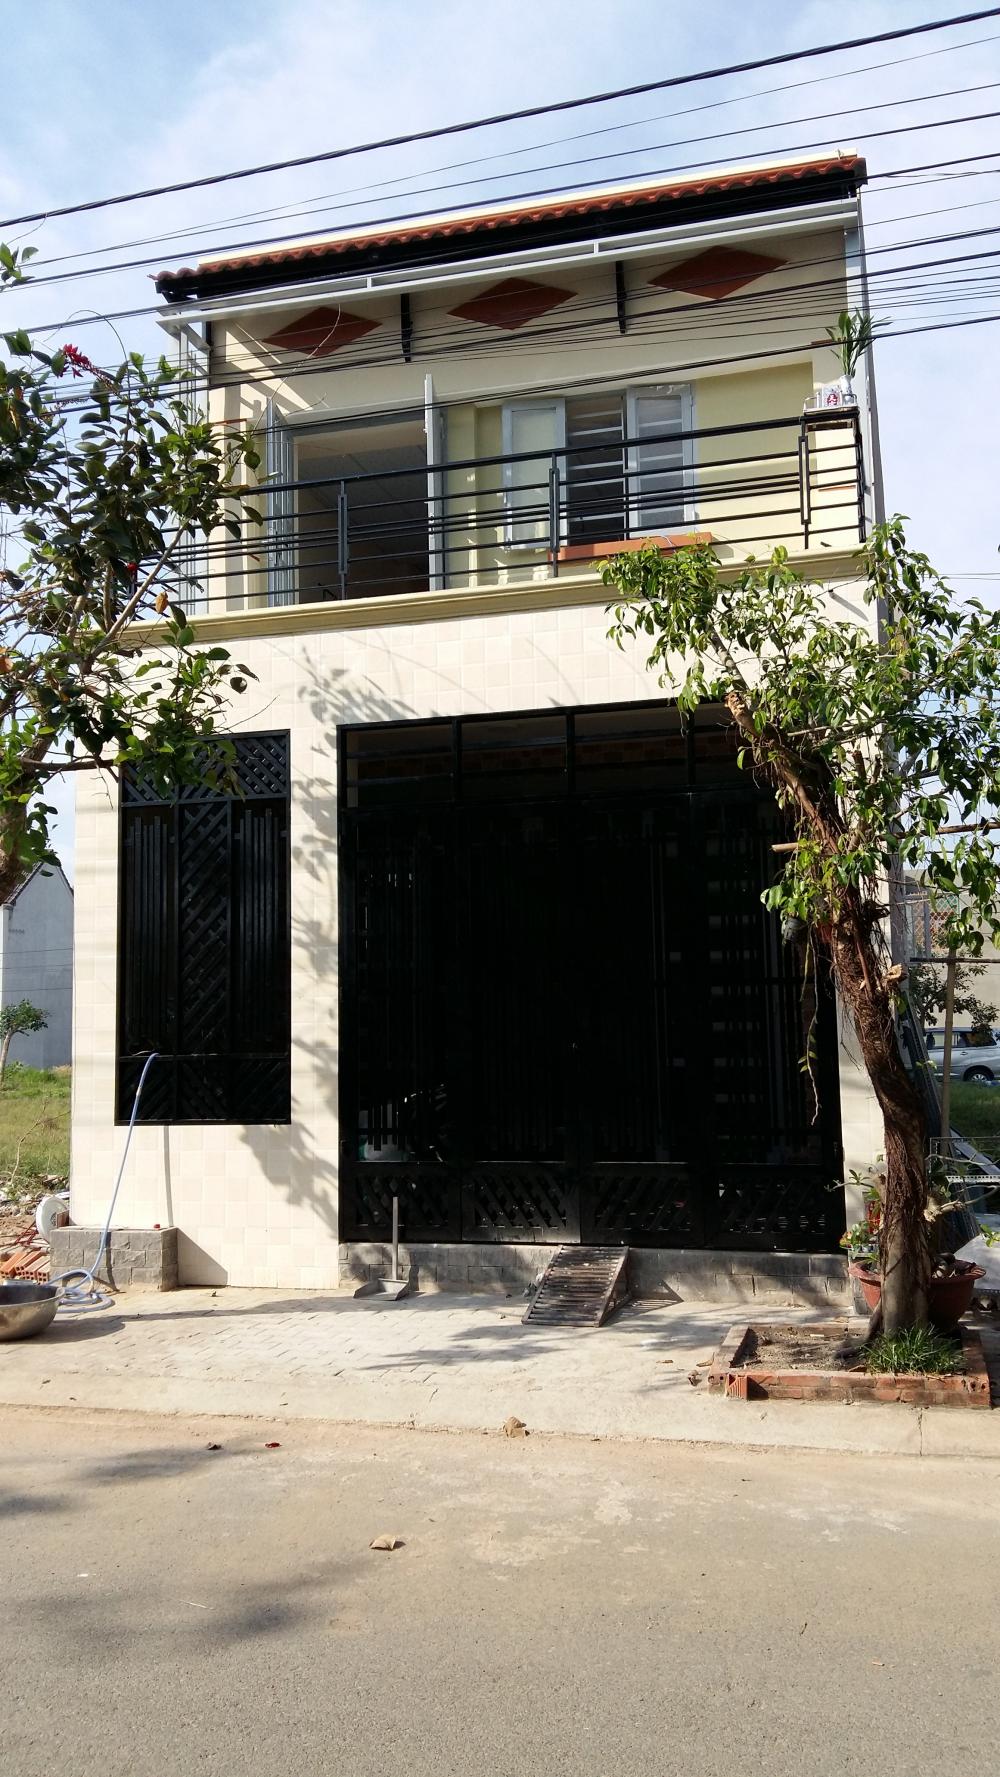 Bán nhà riêng tại đường Xuân Thới Sơn 12, xã Xuân Thới Sơn, Hóc Môn, Tp.HCM. 72m2, giá 700 triệu.